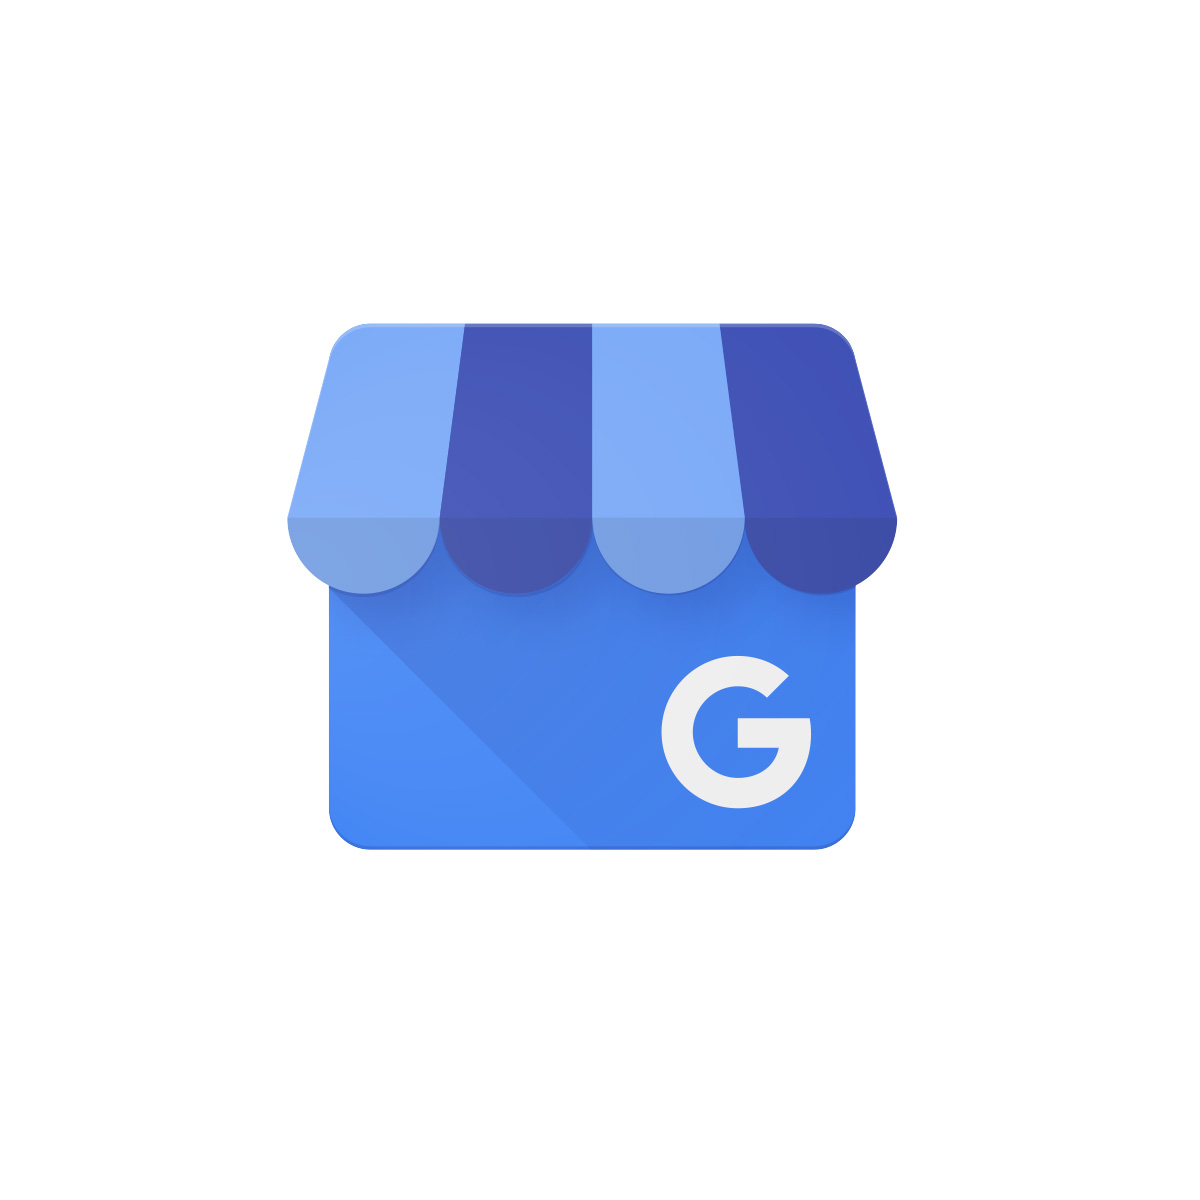 Google işletme profili nedir?